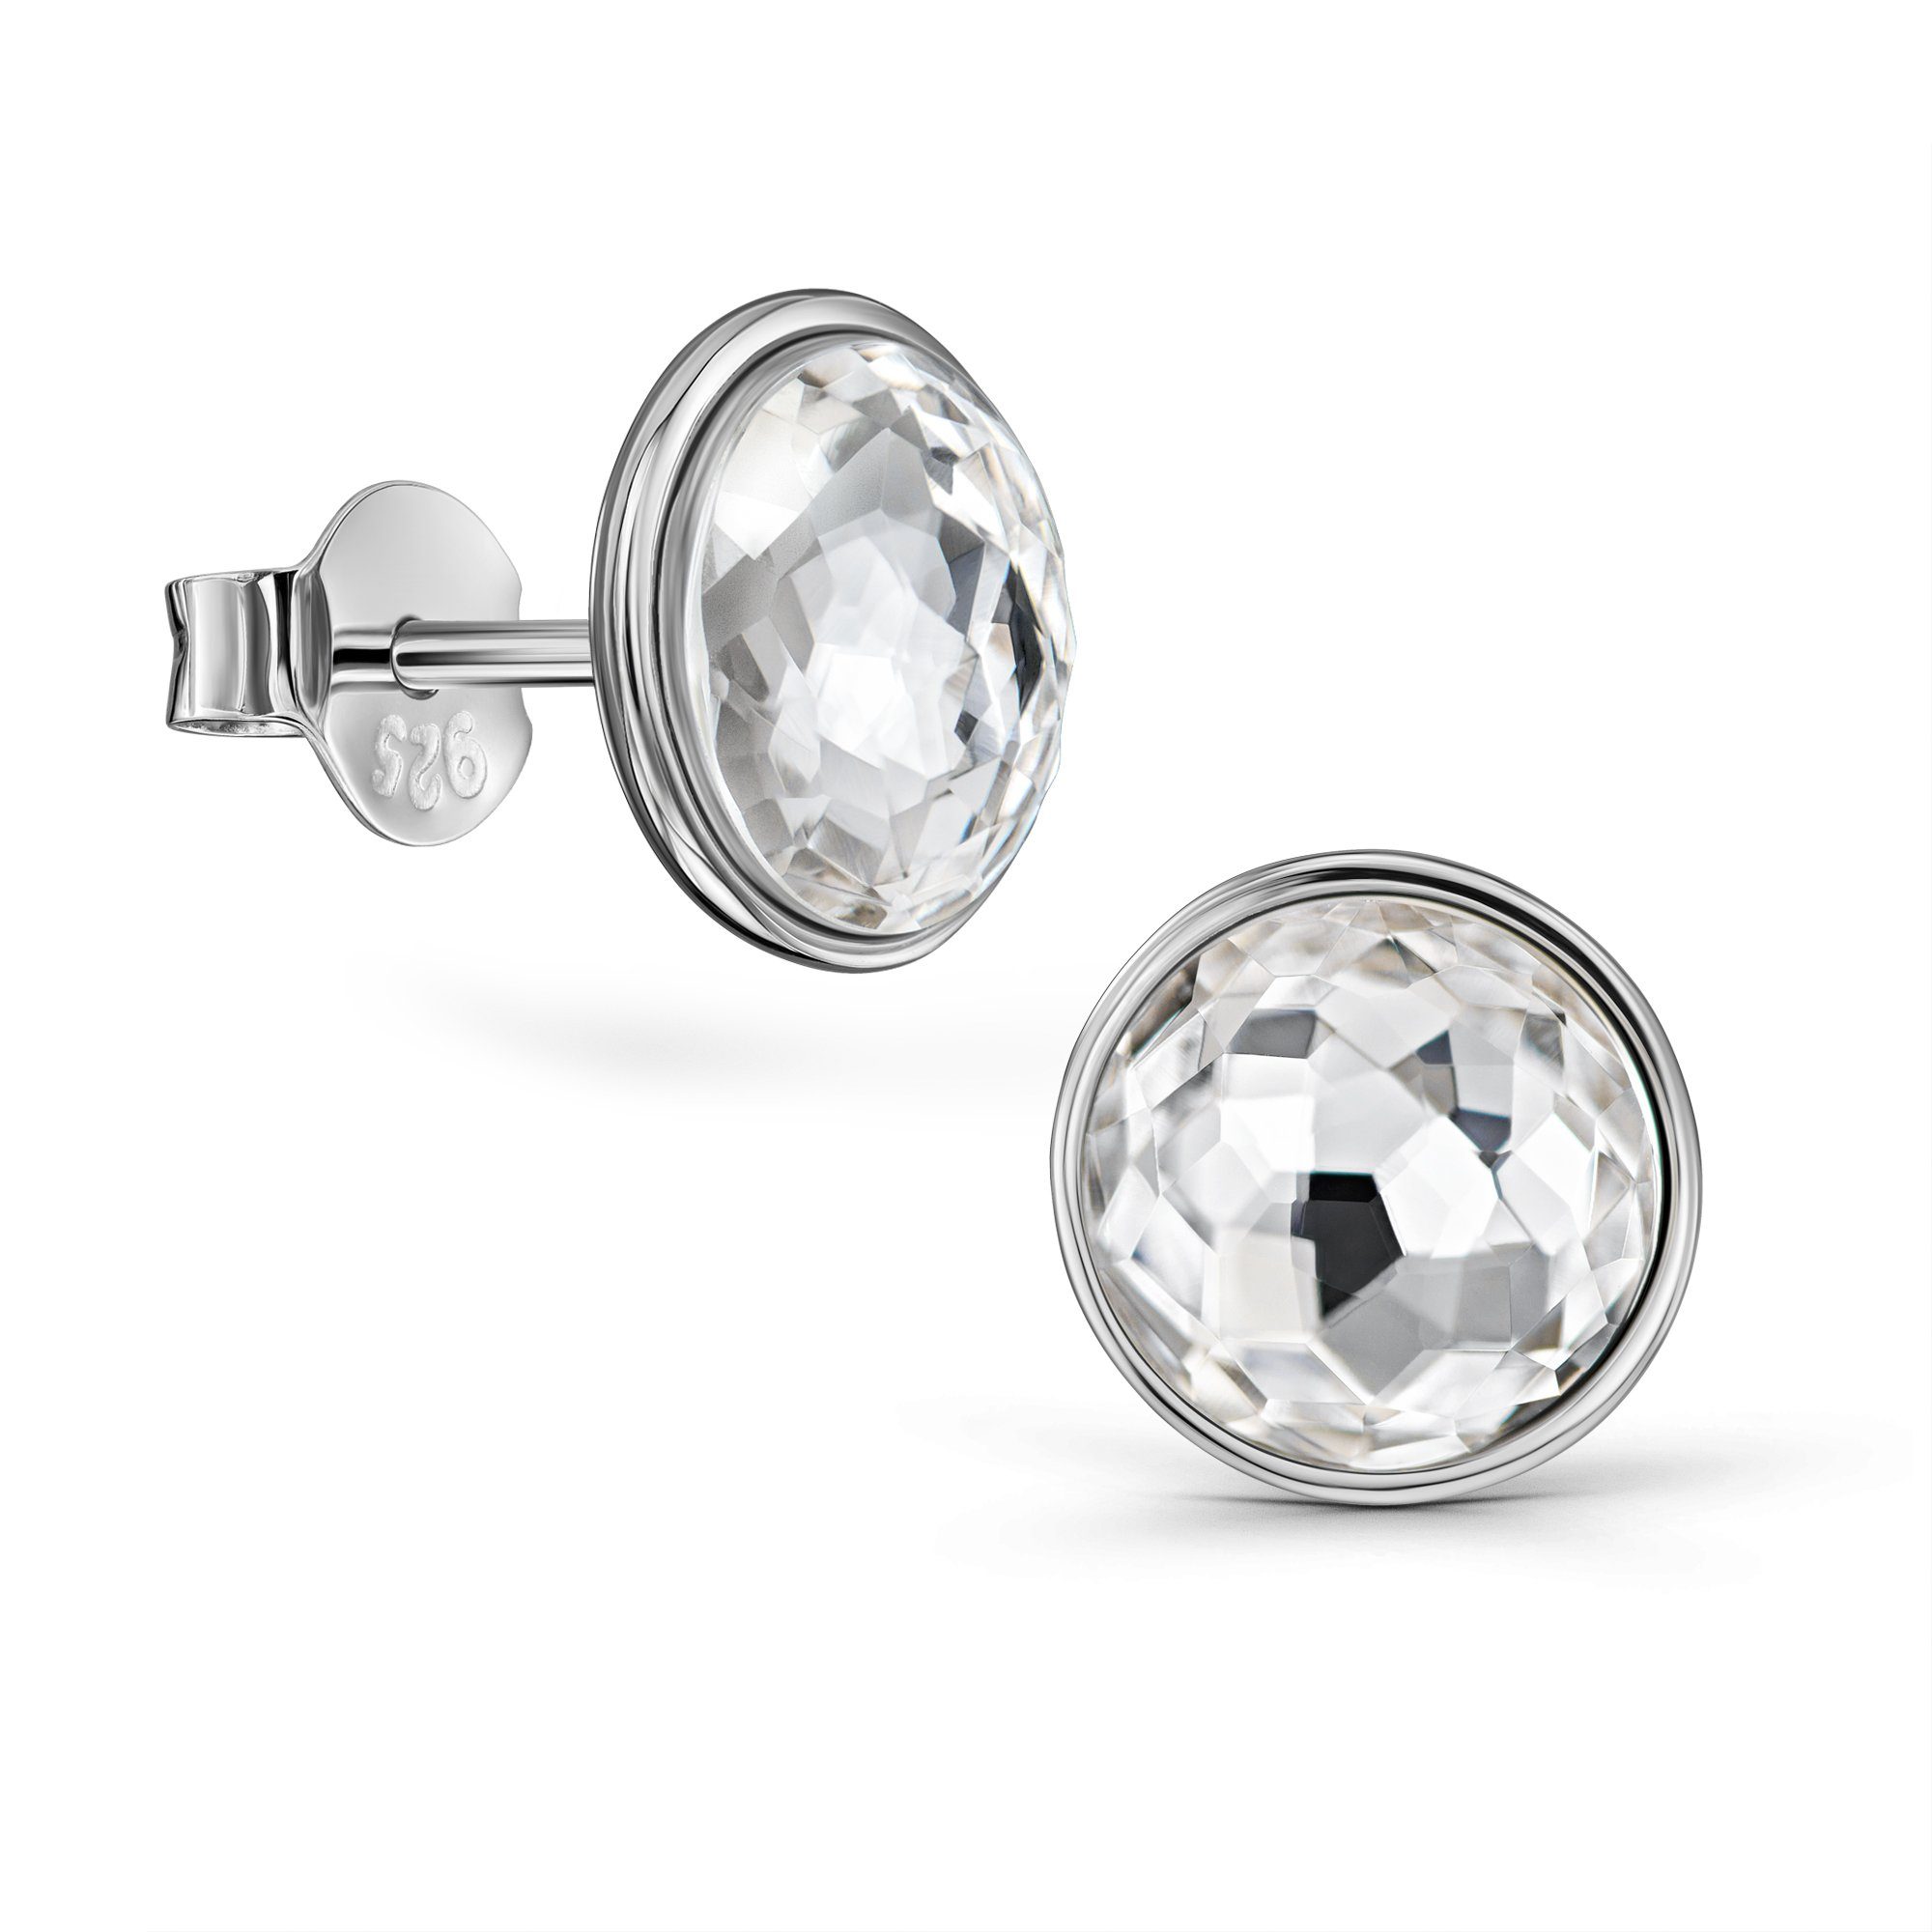 Schöner-SD Paar Ohrstecker Silberohrringe Stecker mit Kristall rund 8mm Ohrringe viele Farben, mit Markenkristall, 925 Silber